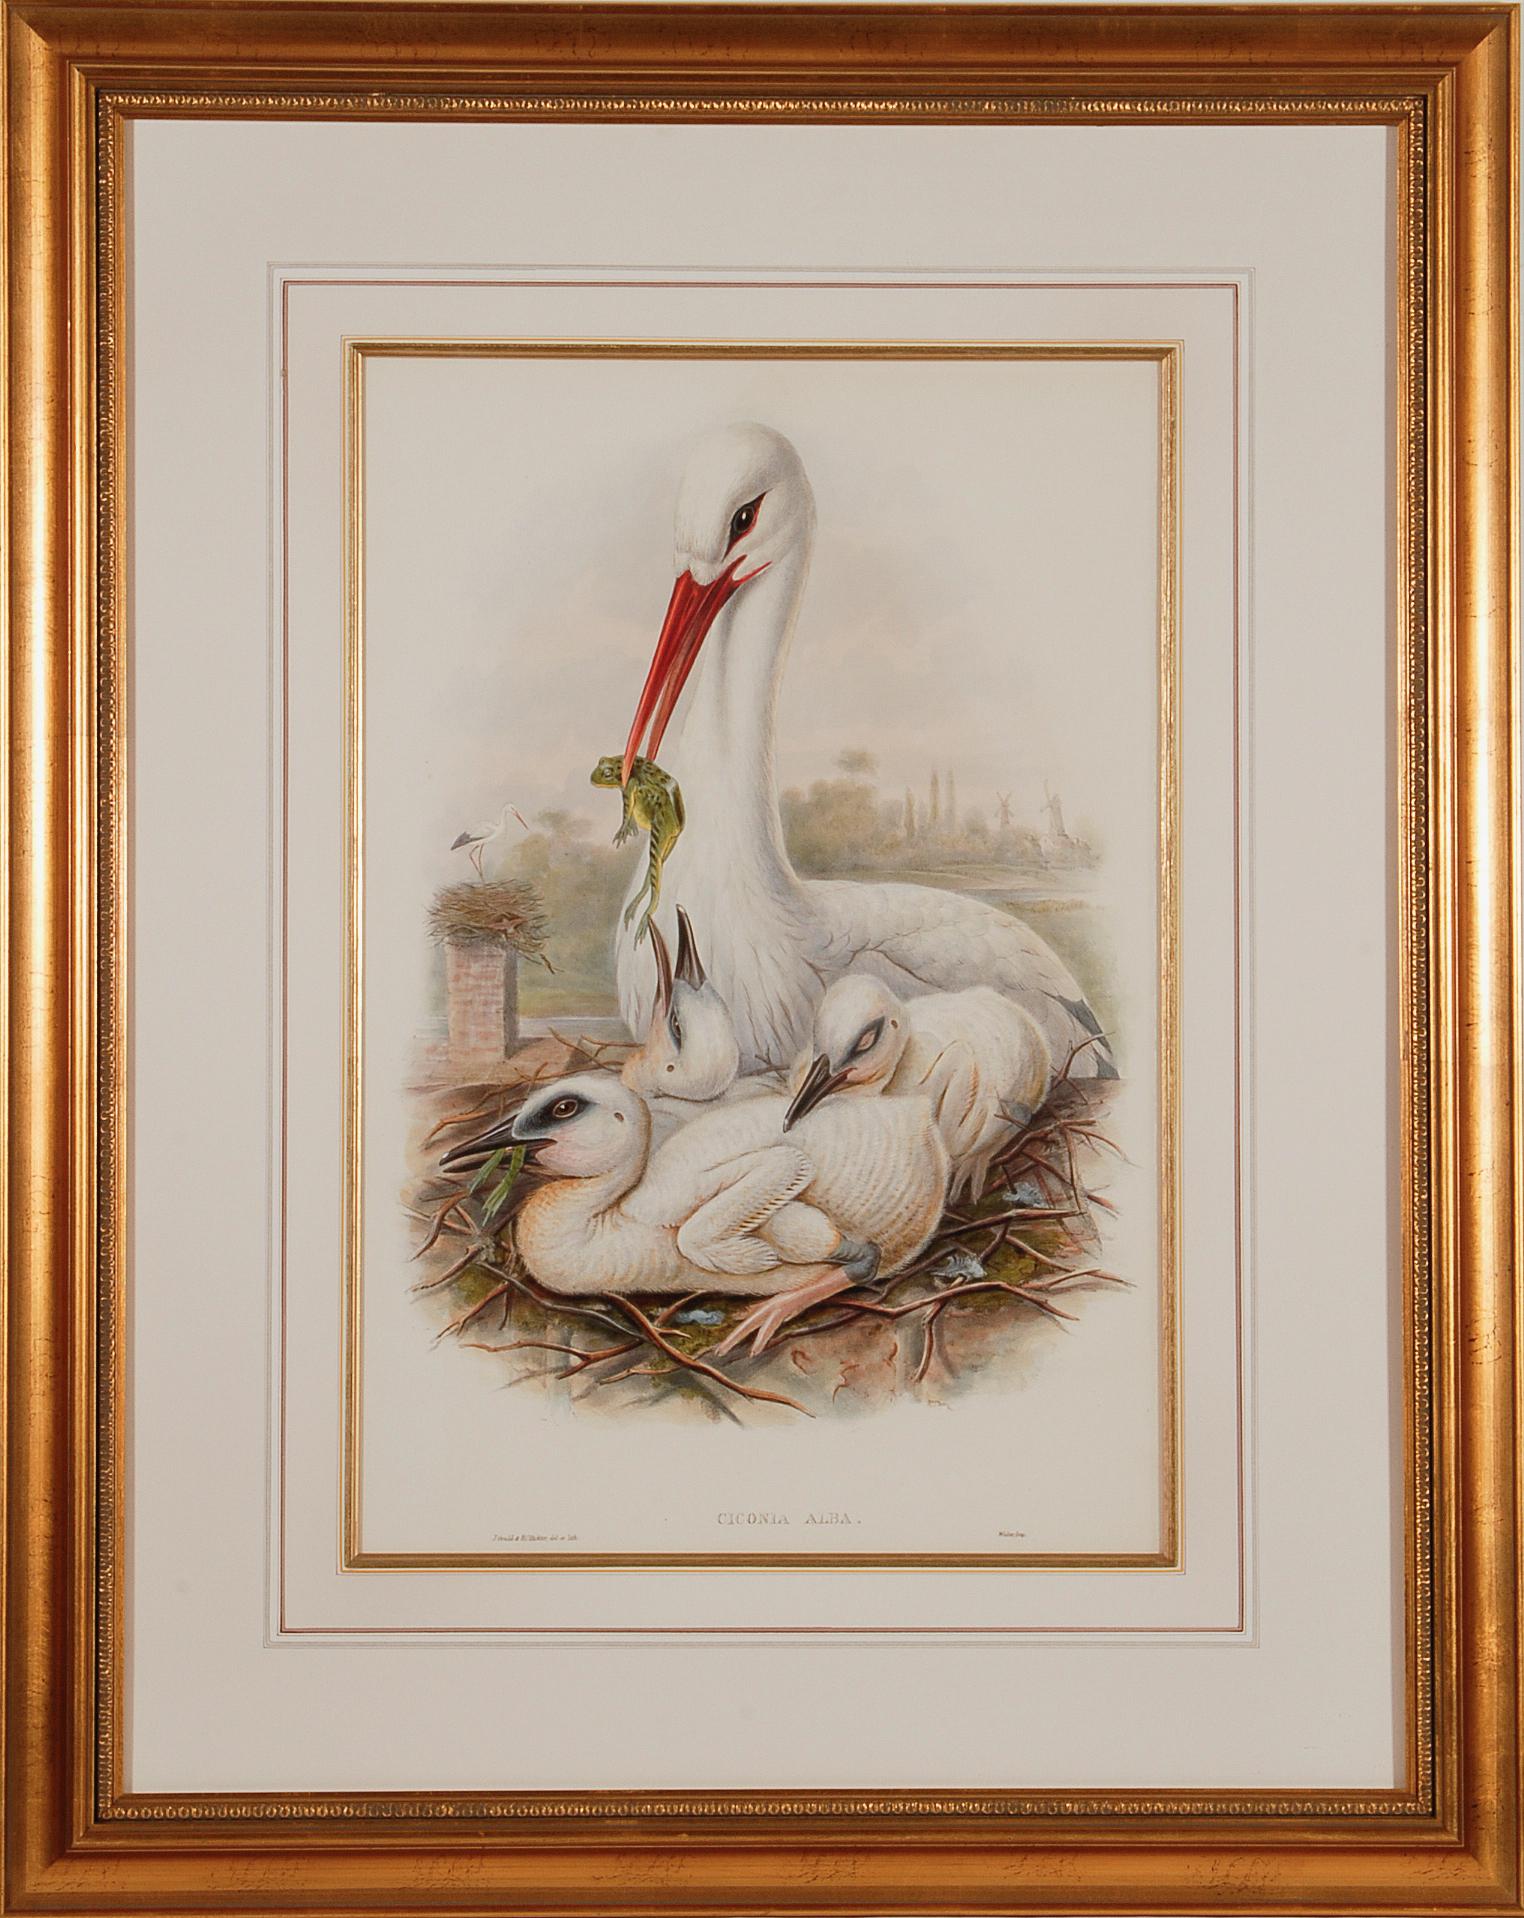 La famille Stork : une lithographie originale encadrée du 19e siècle, colorée à la main par Gould